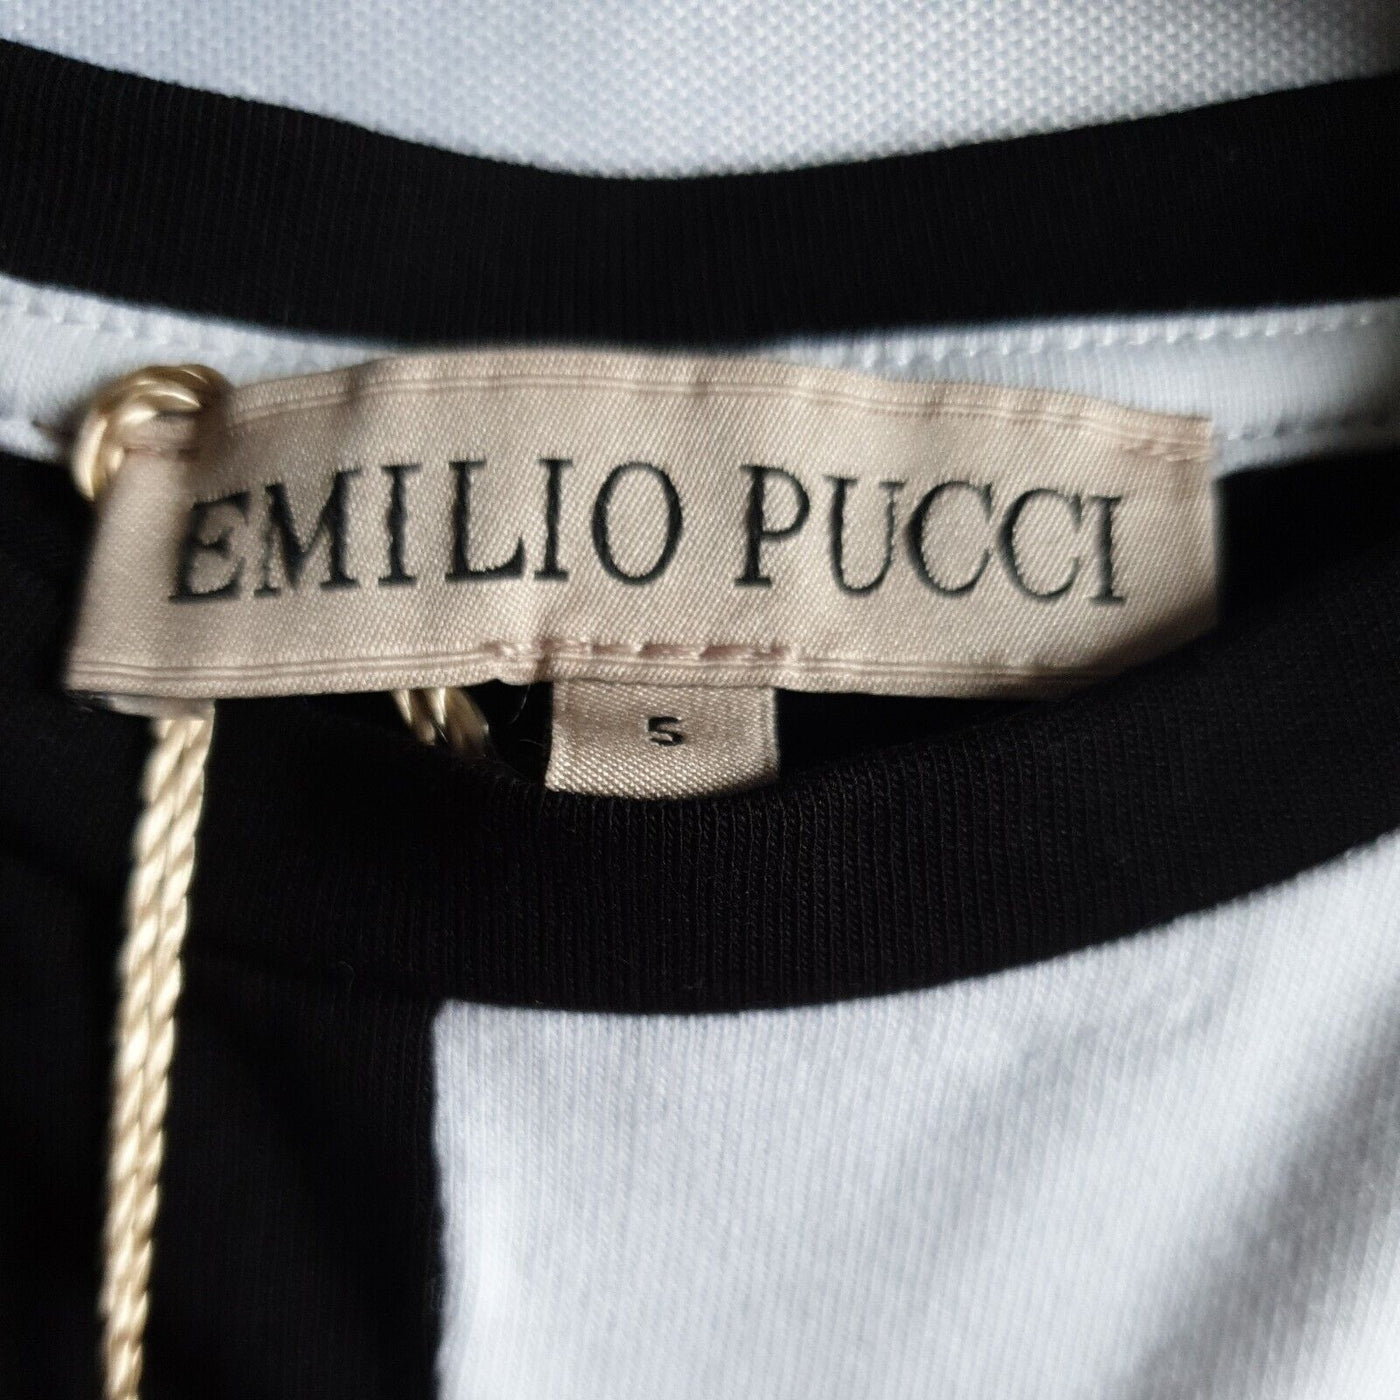 Emilio Pucci Girls Black/White Tshirt Size 5yrs****Ref V40